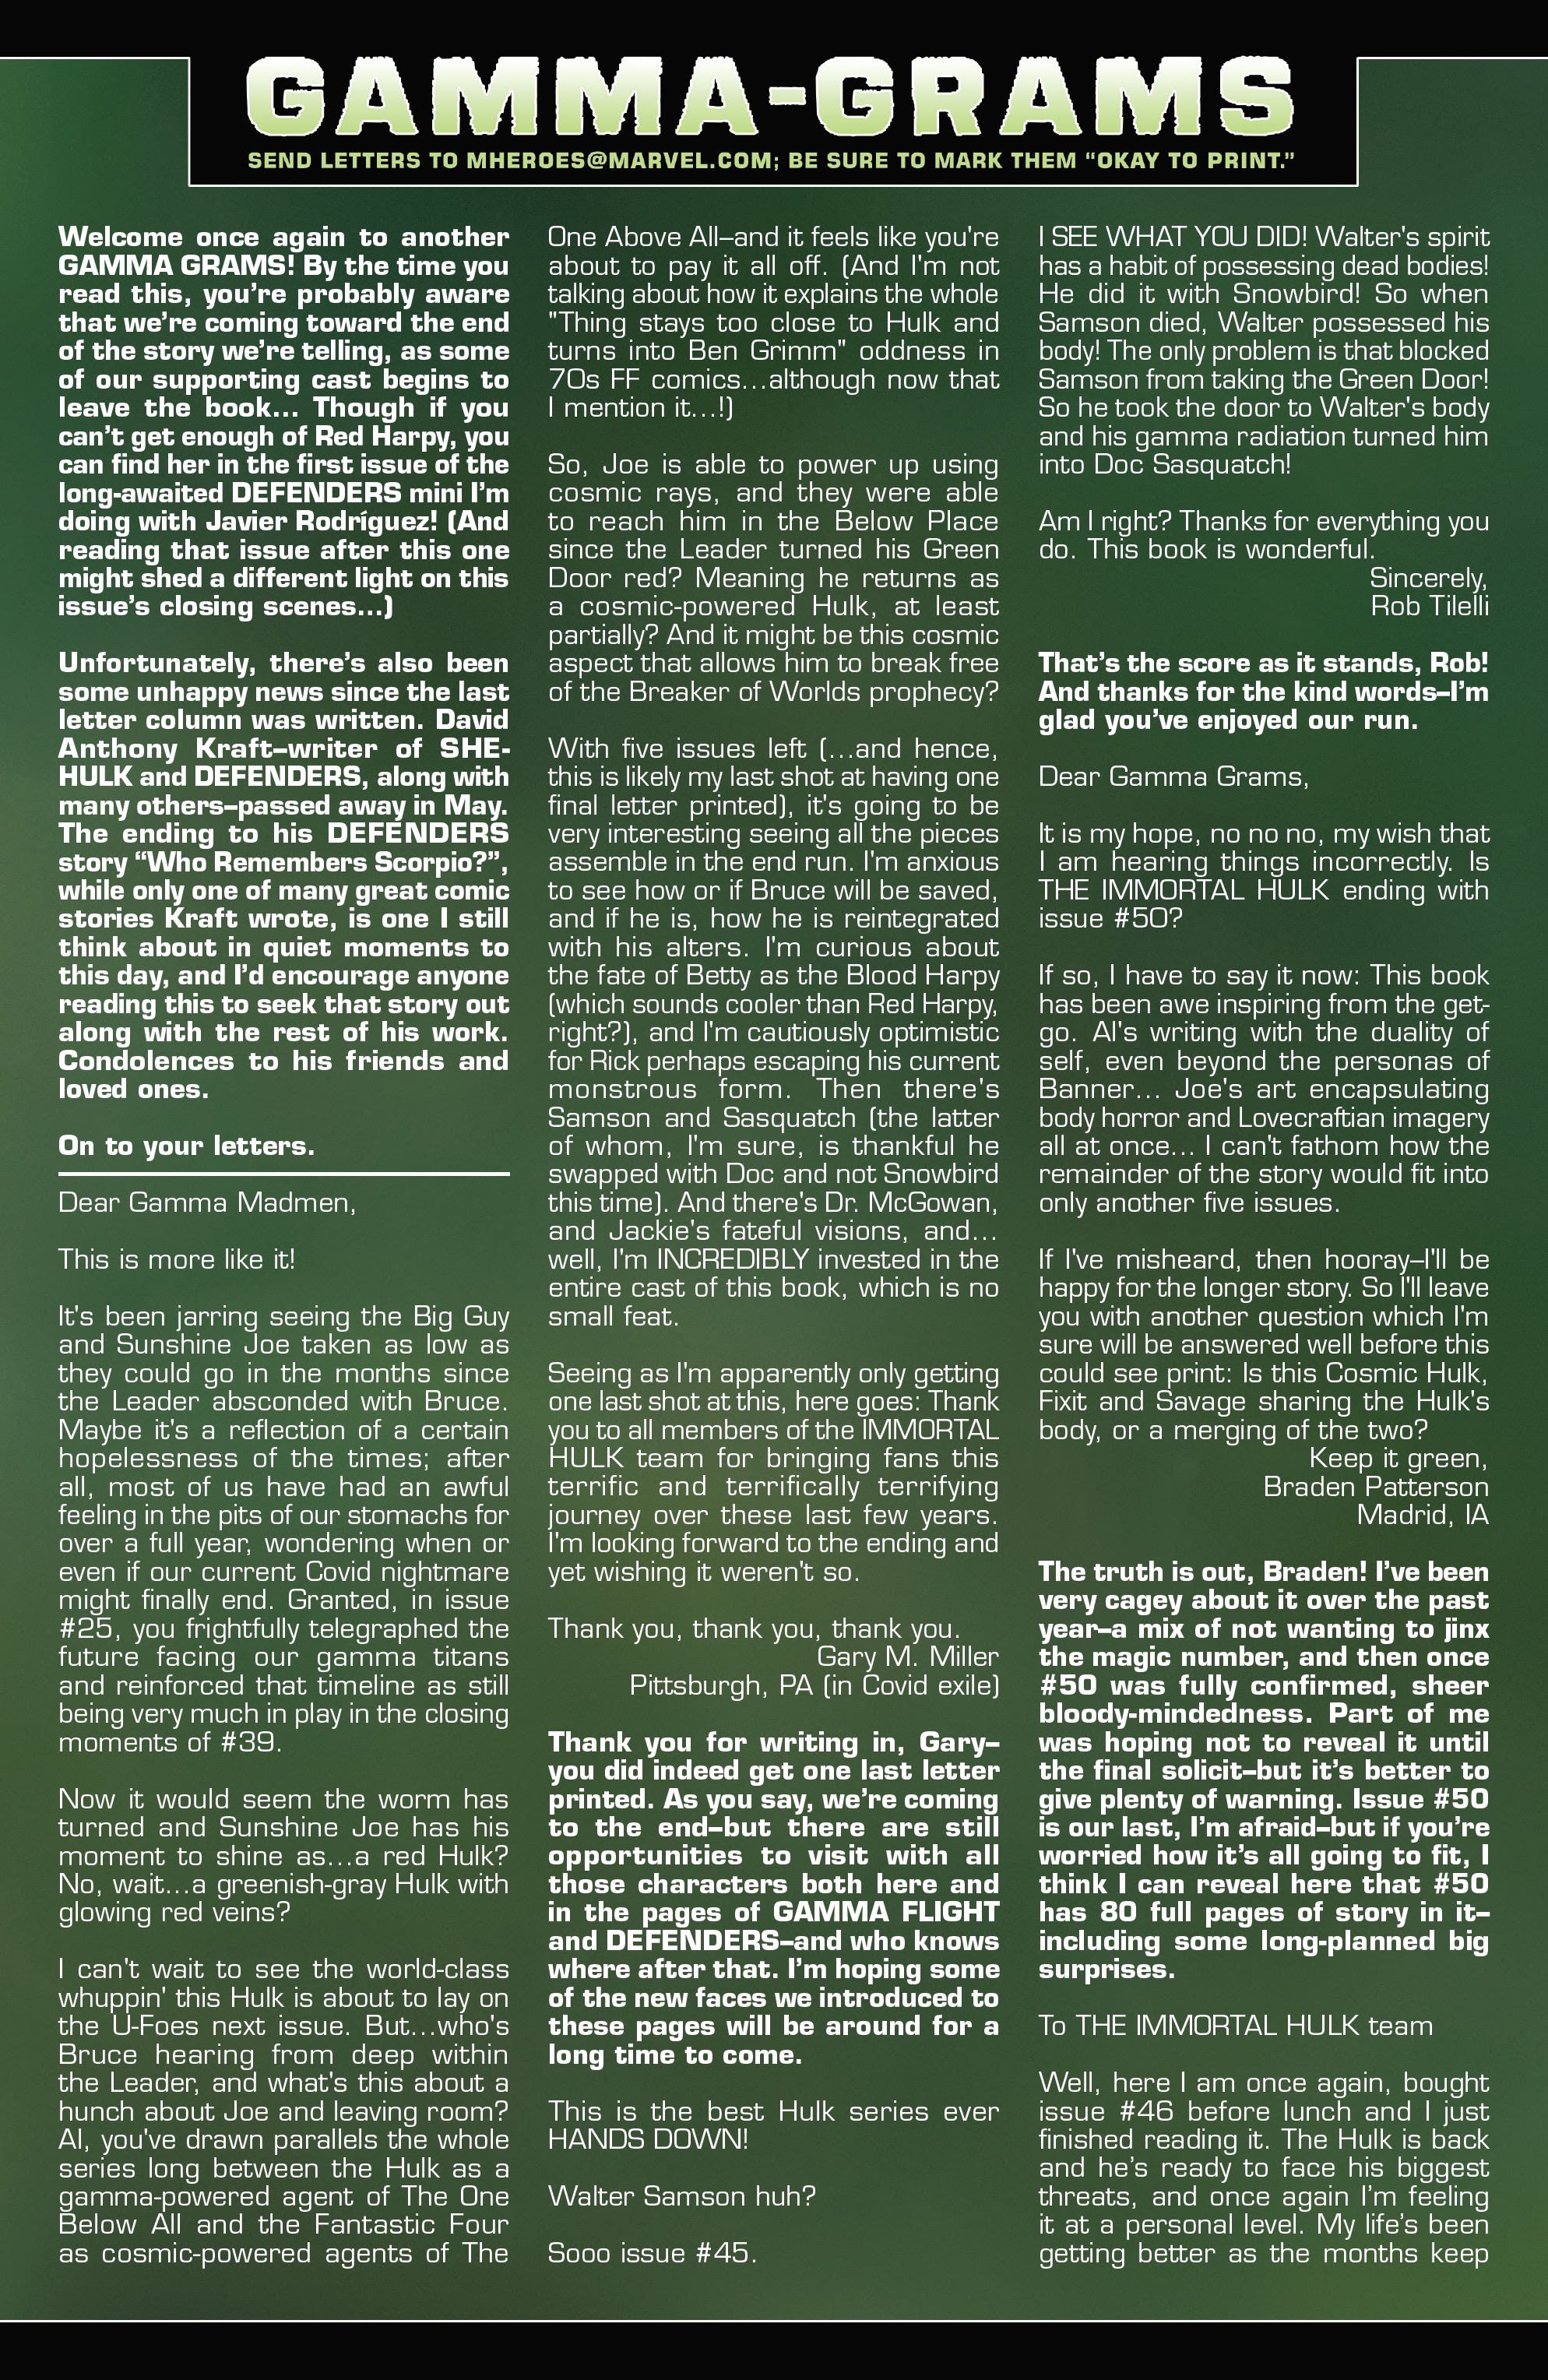 Read online Immortal Hulk comic -  Issue #48 - 26